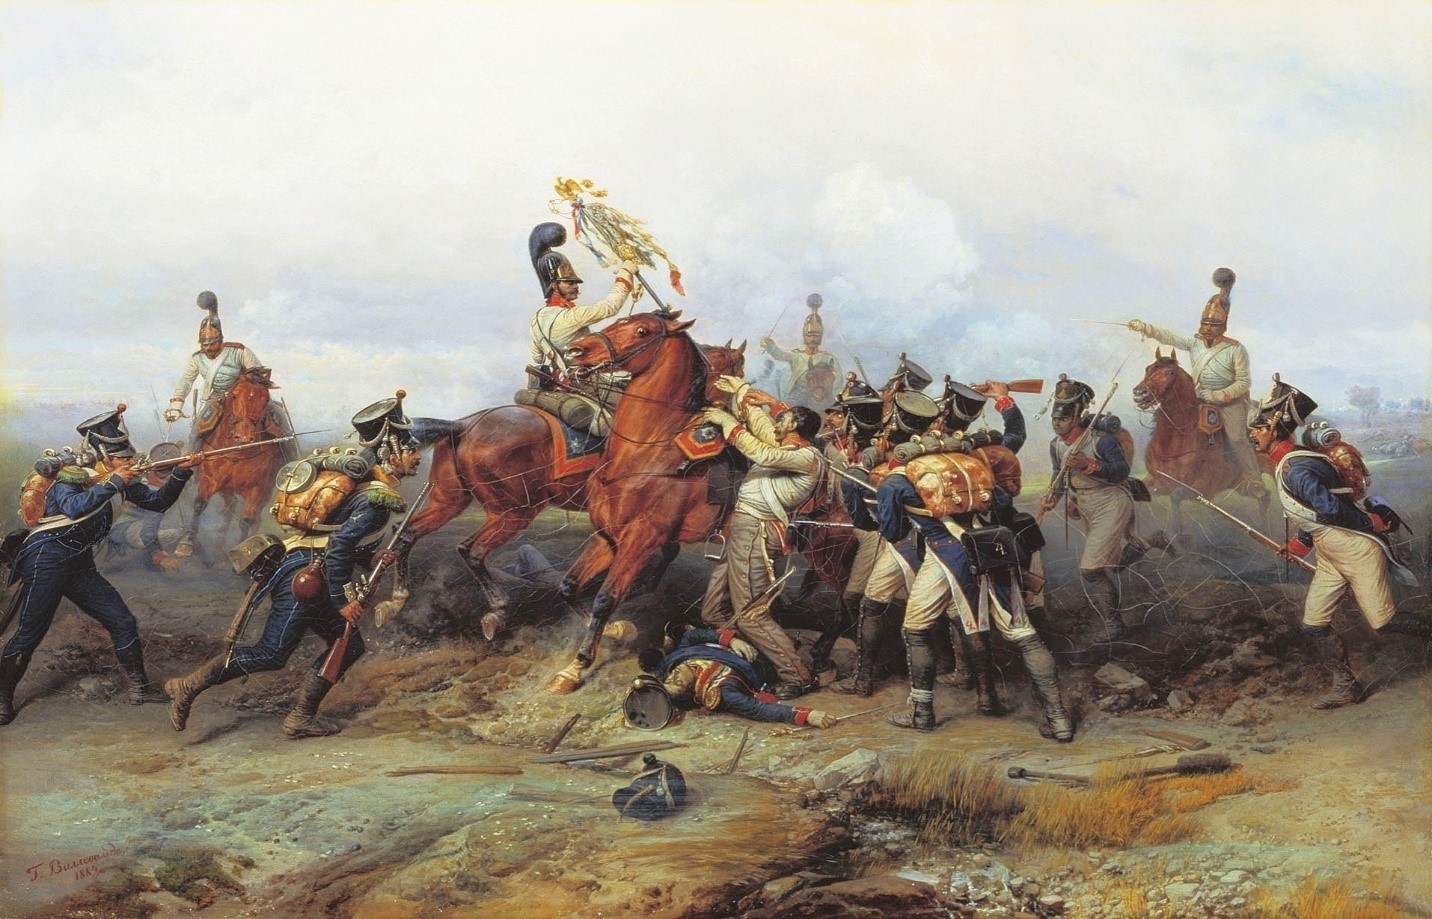 চিত্র: অস্টারলিটজের যুদ্ধের একাংশ; Image Courtesy: https://commons.wikimedia.org/wiki/File:Willewalde_-_Czar's_Guard_capture_4th_line_regiment's_standard_at_Austerlitz.jpg